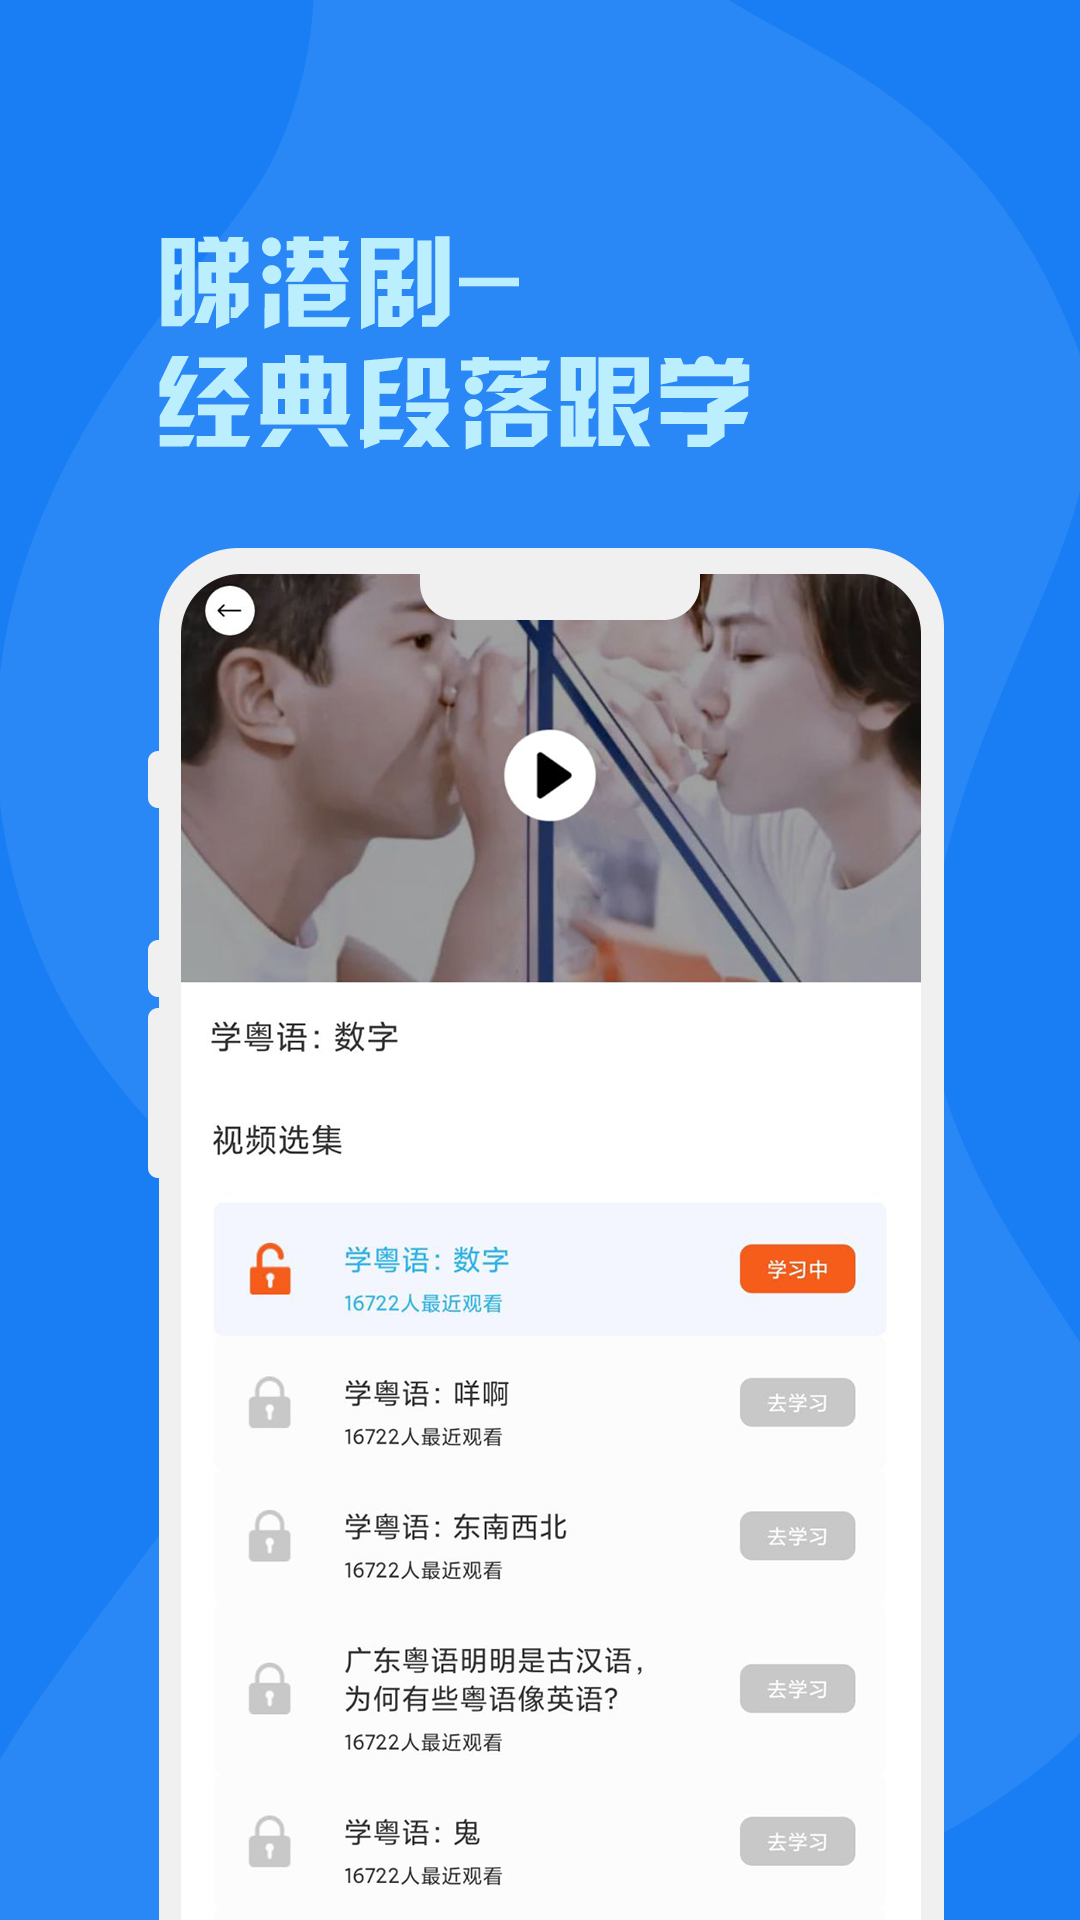 粤语词典app图1